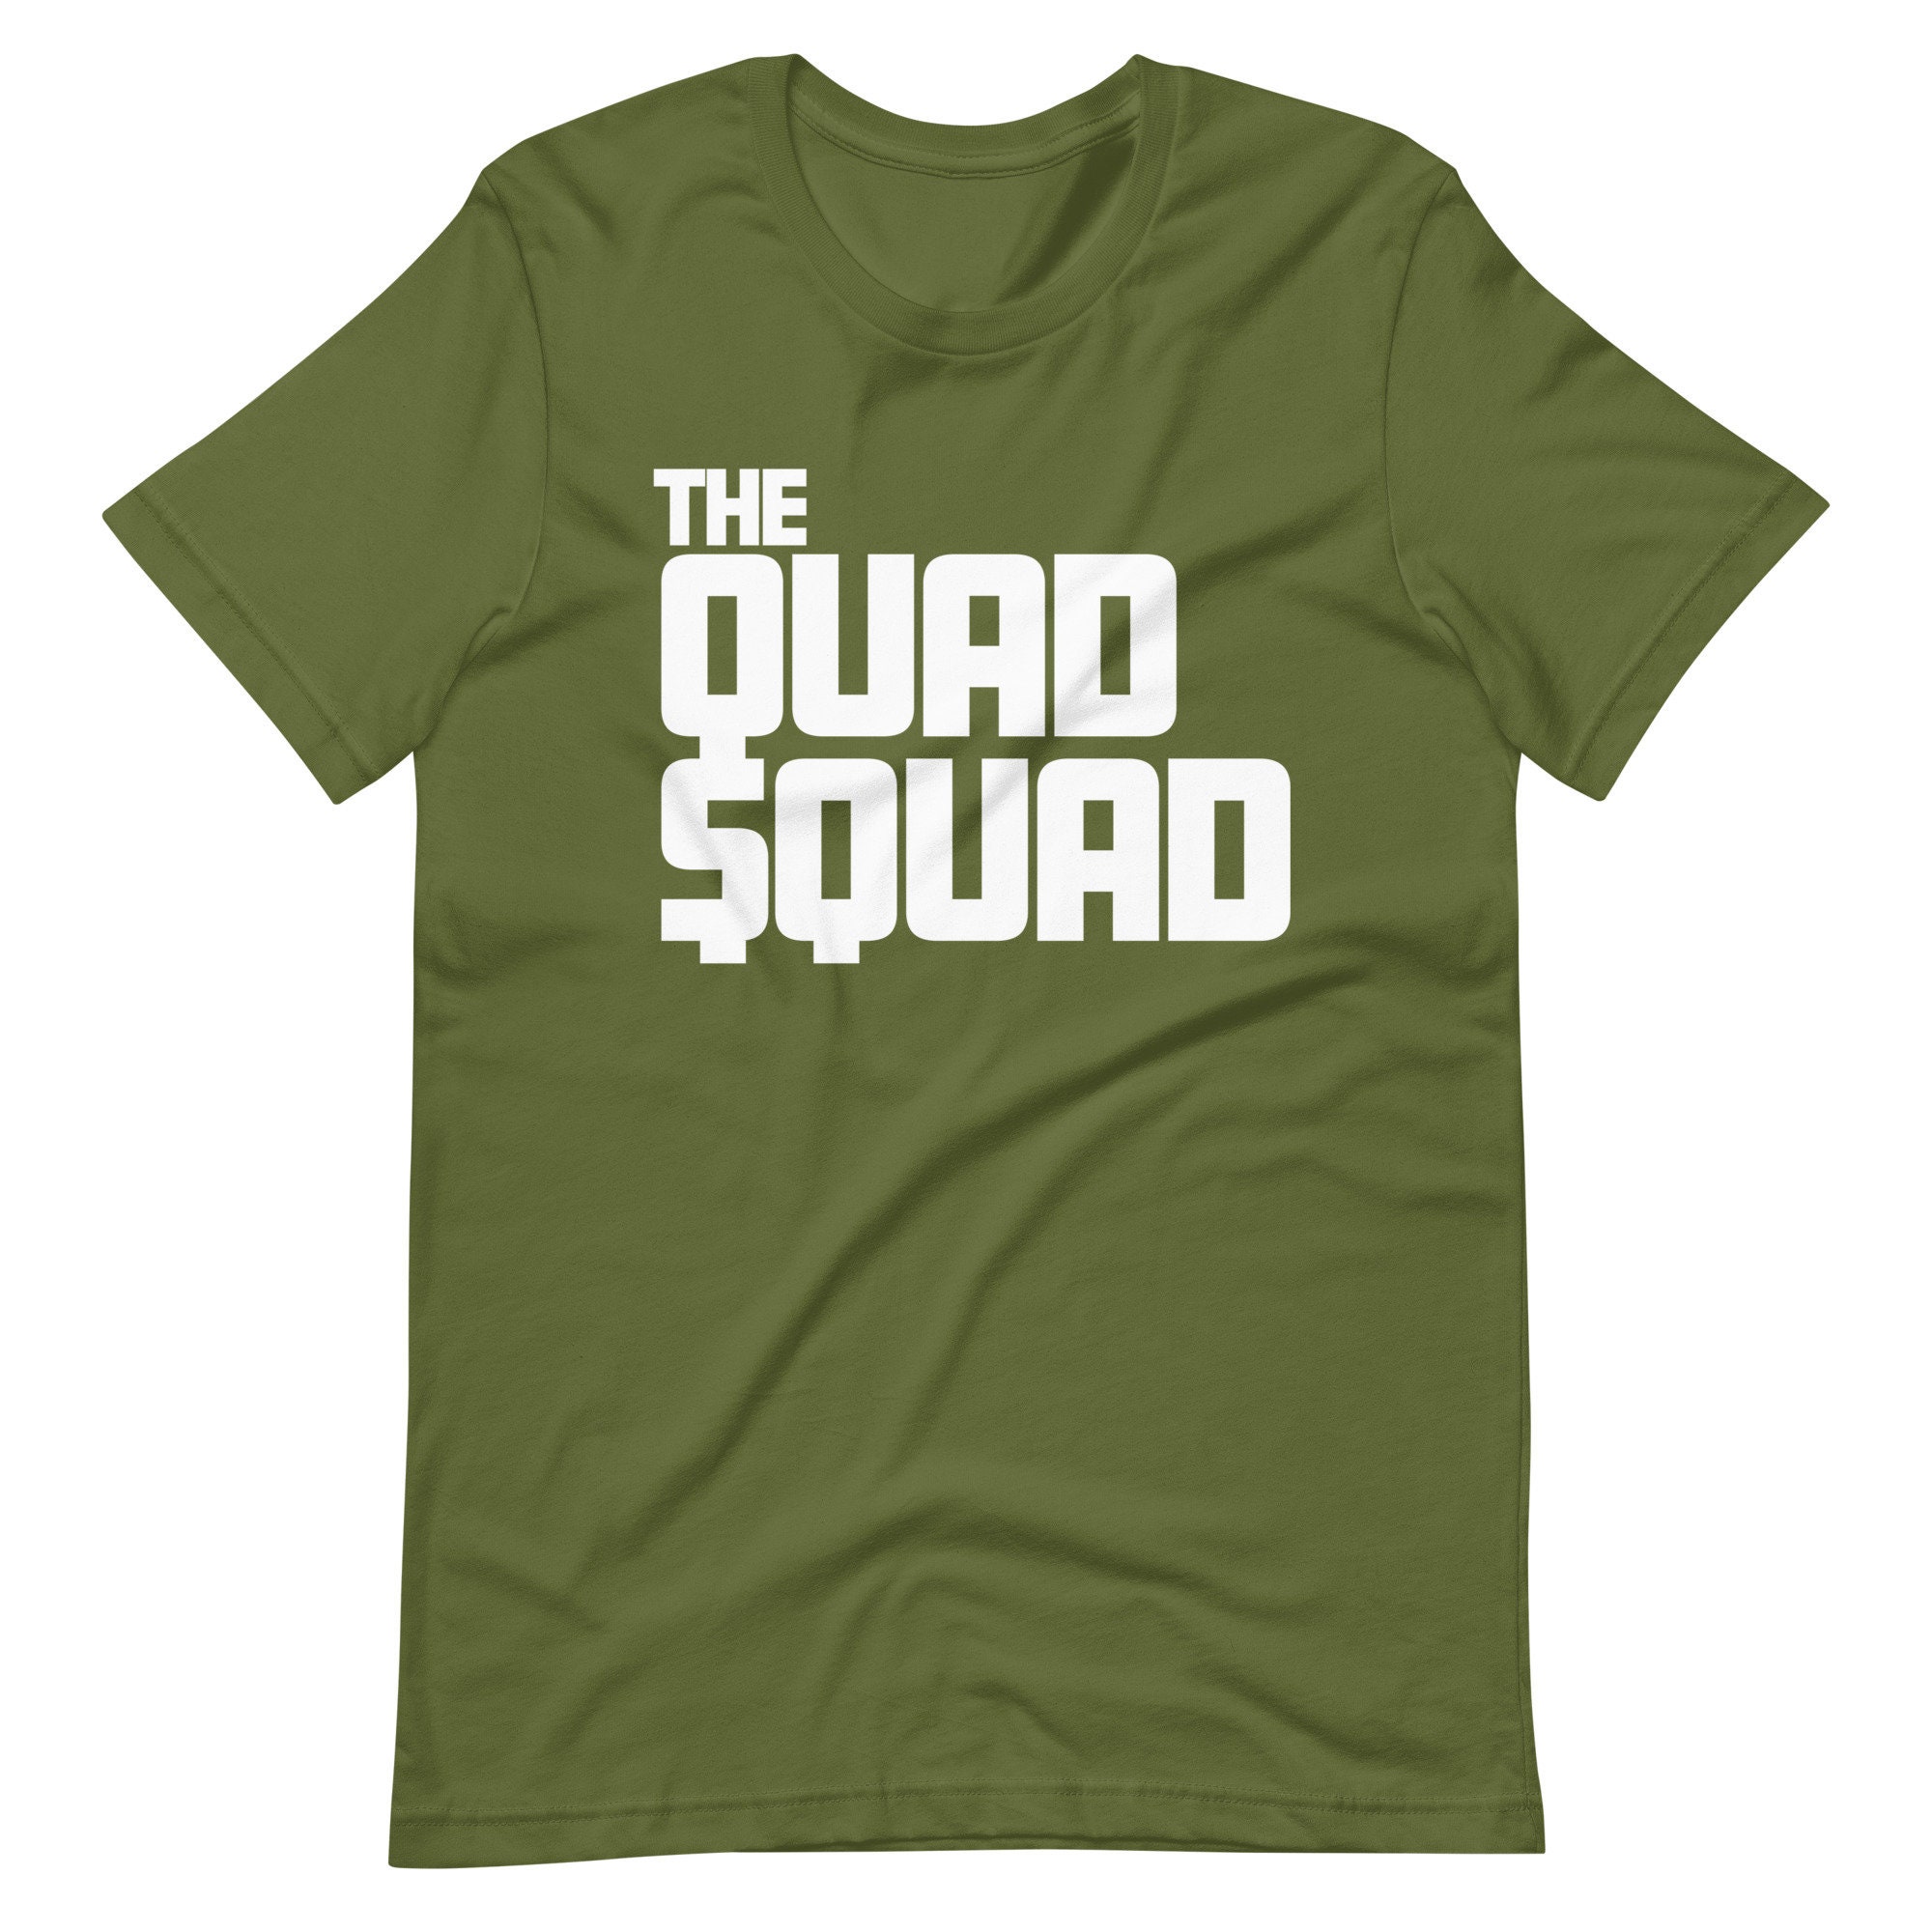 The Quad Squad succession T-shirt